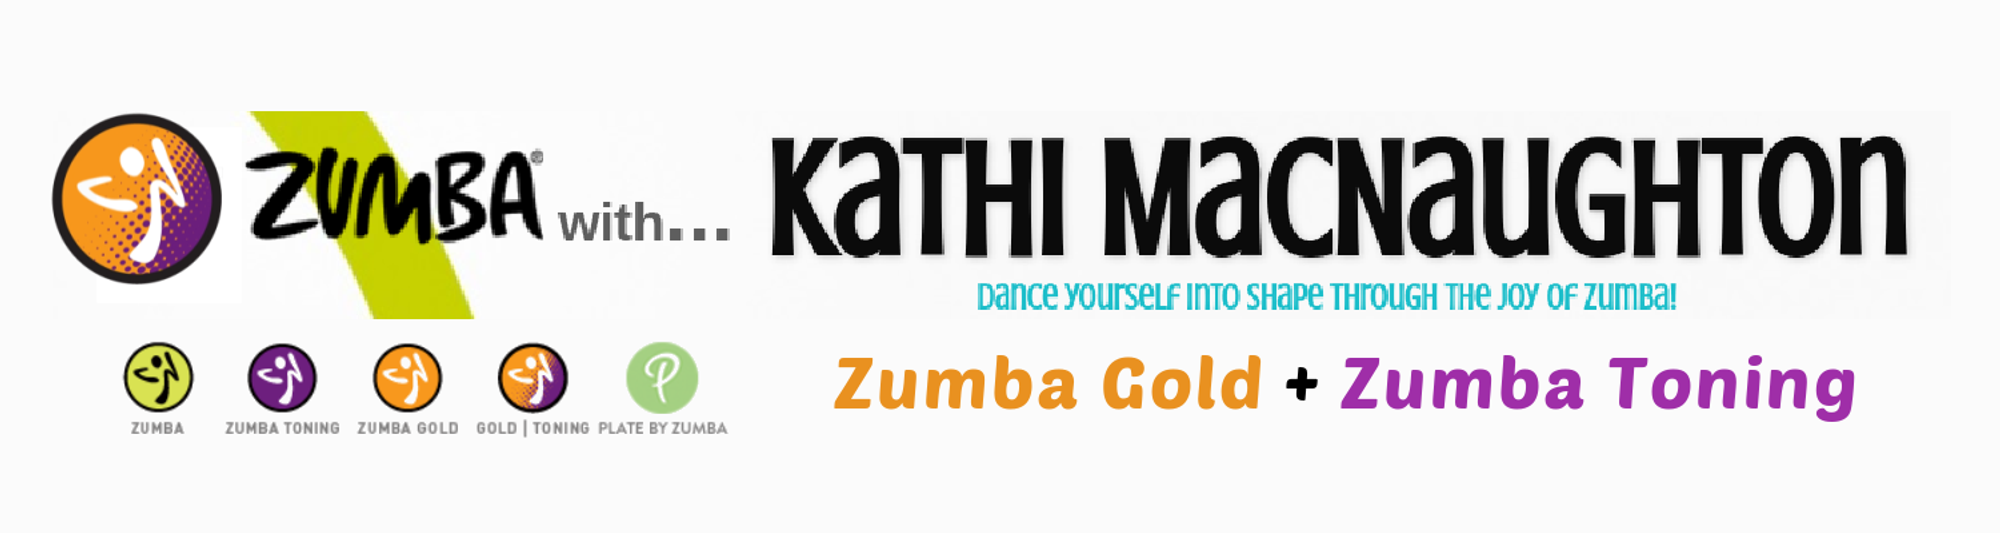 zumba gold logo